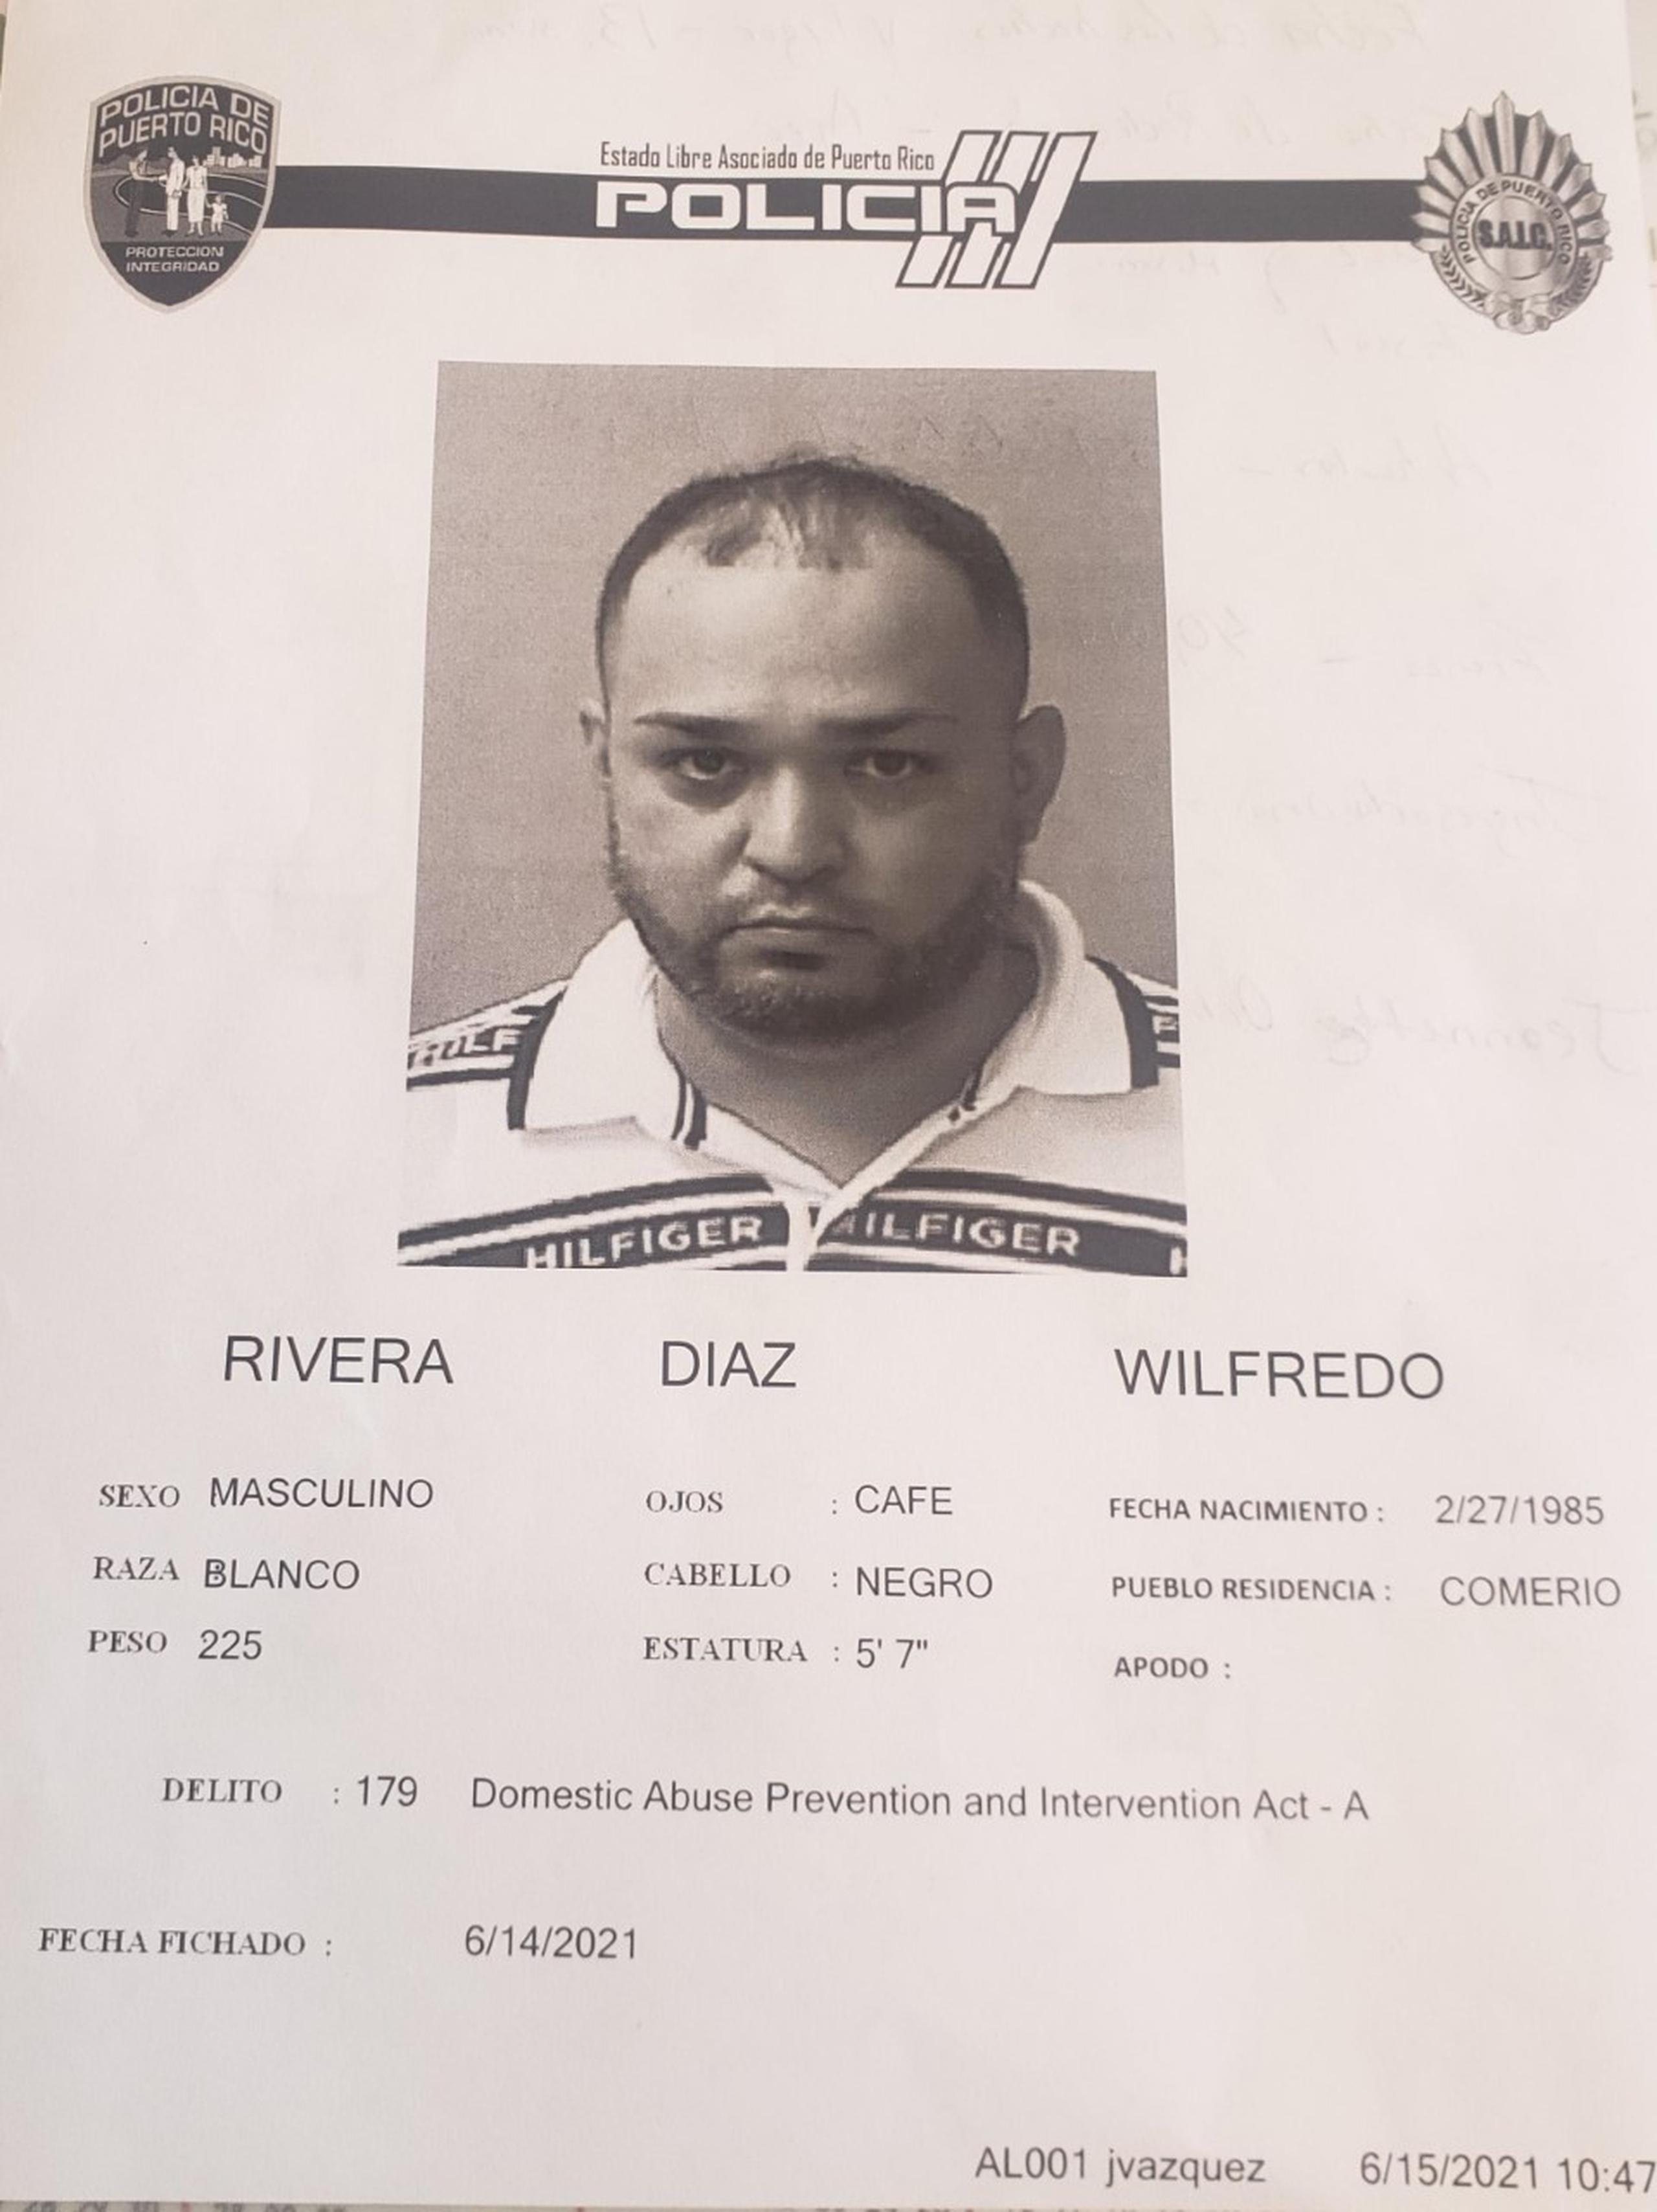 La vista preliminar contra Wilfredo Rivera Díaz fue pautada para el 1 de julio.